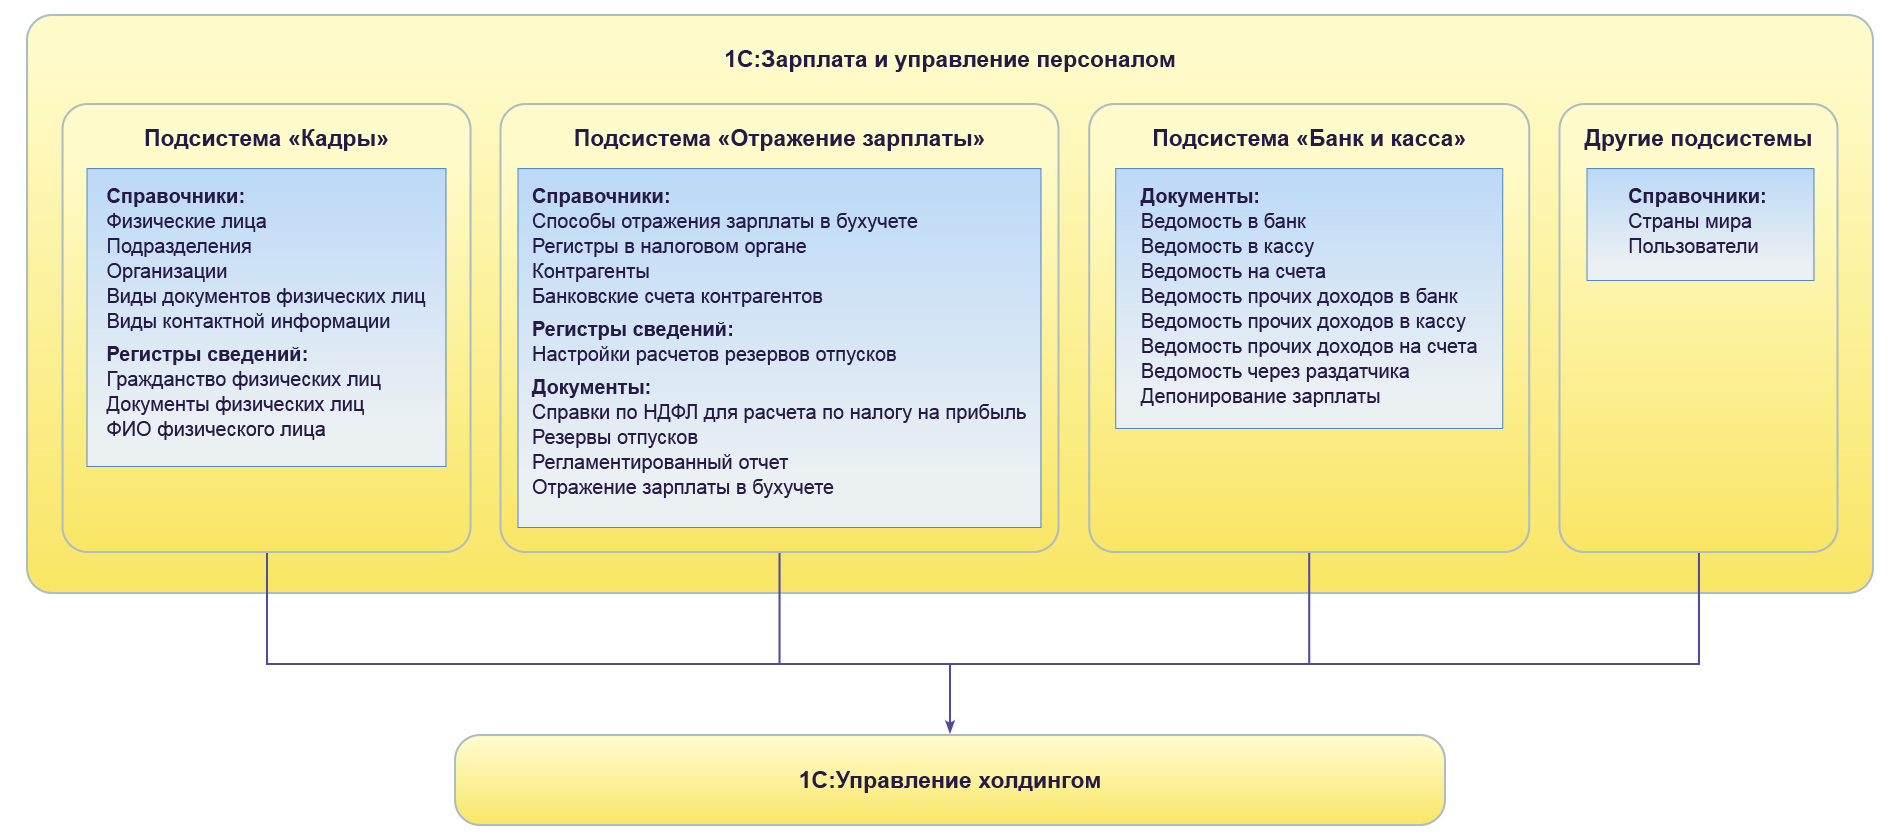 Схема архитектуры системы